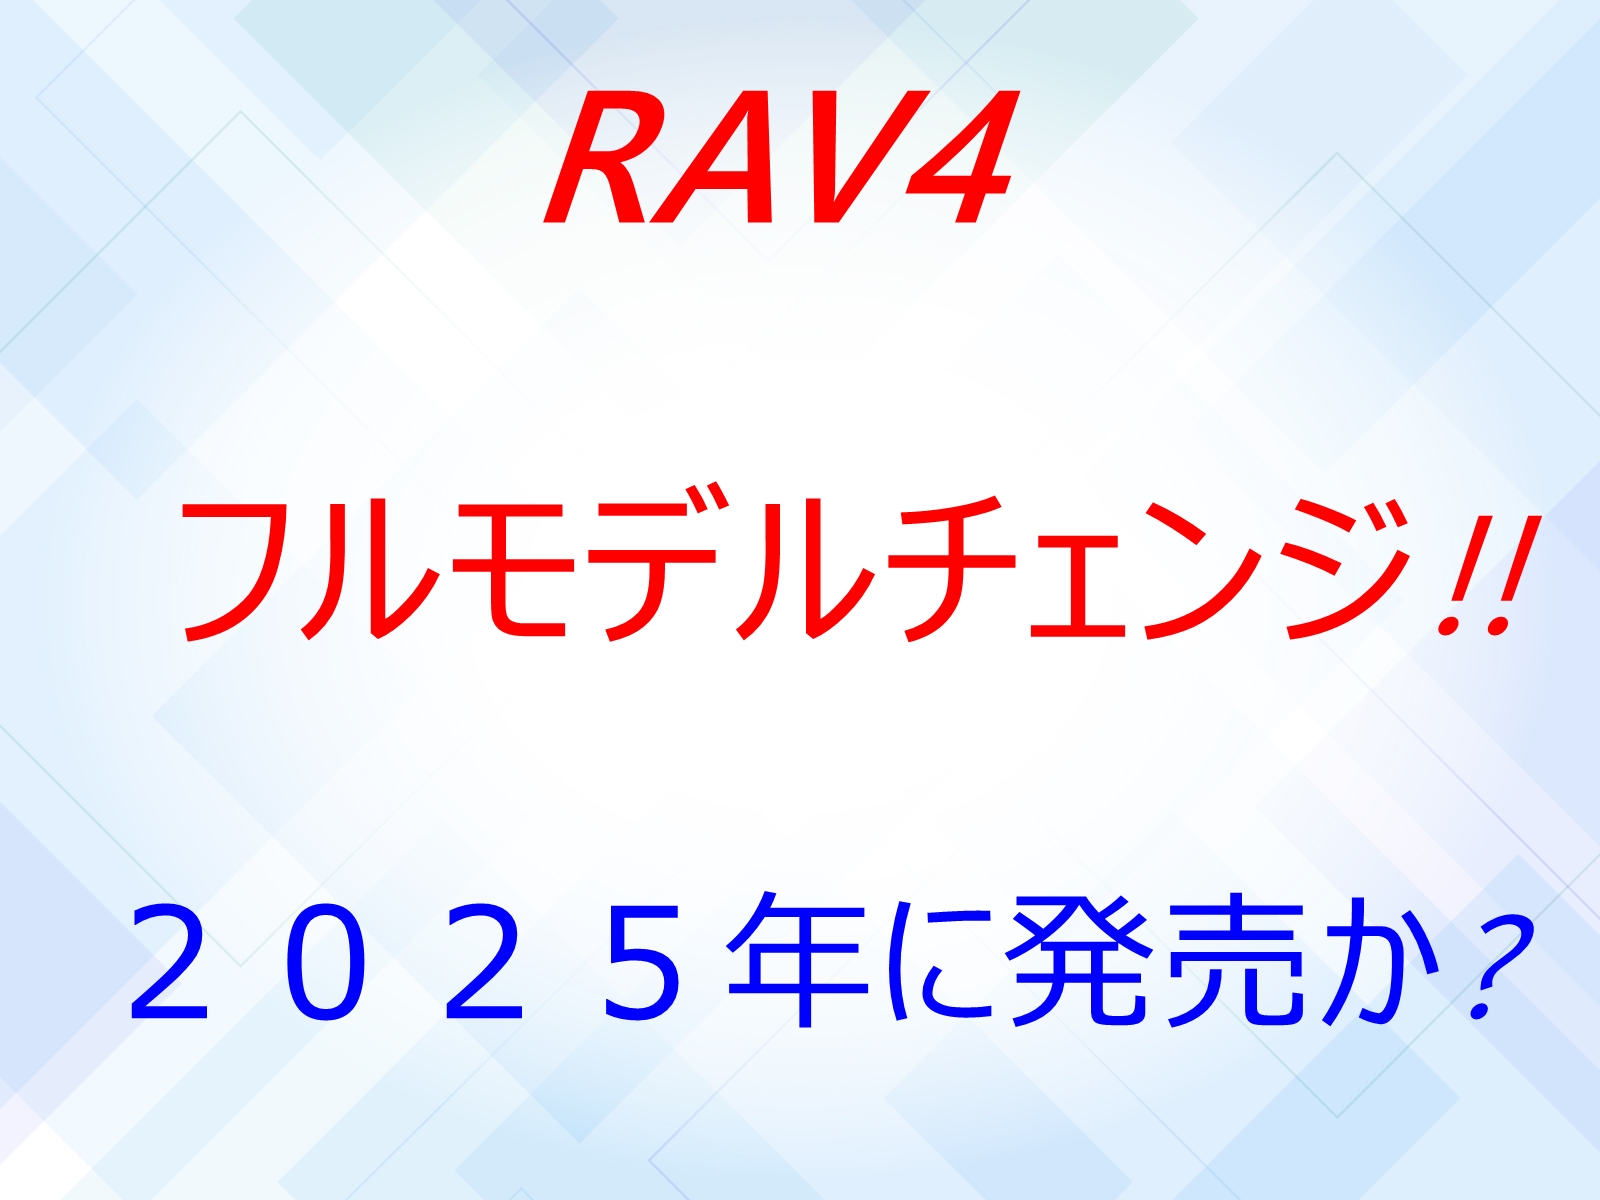 RAV4のフルモデルチェンジ!!2025年に発売か!?